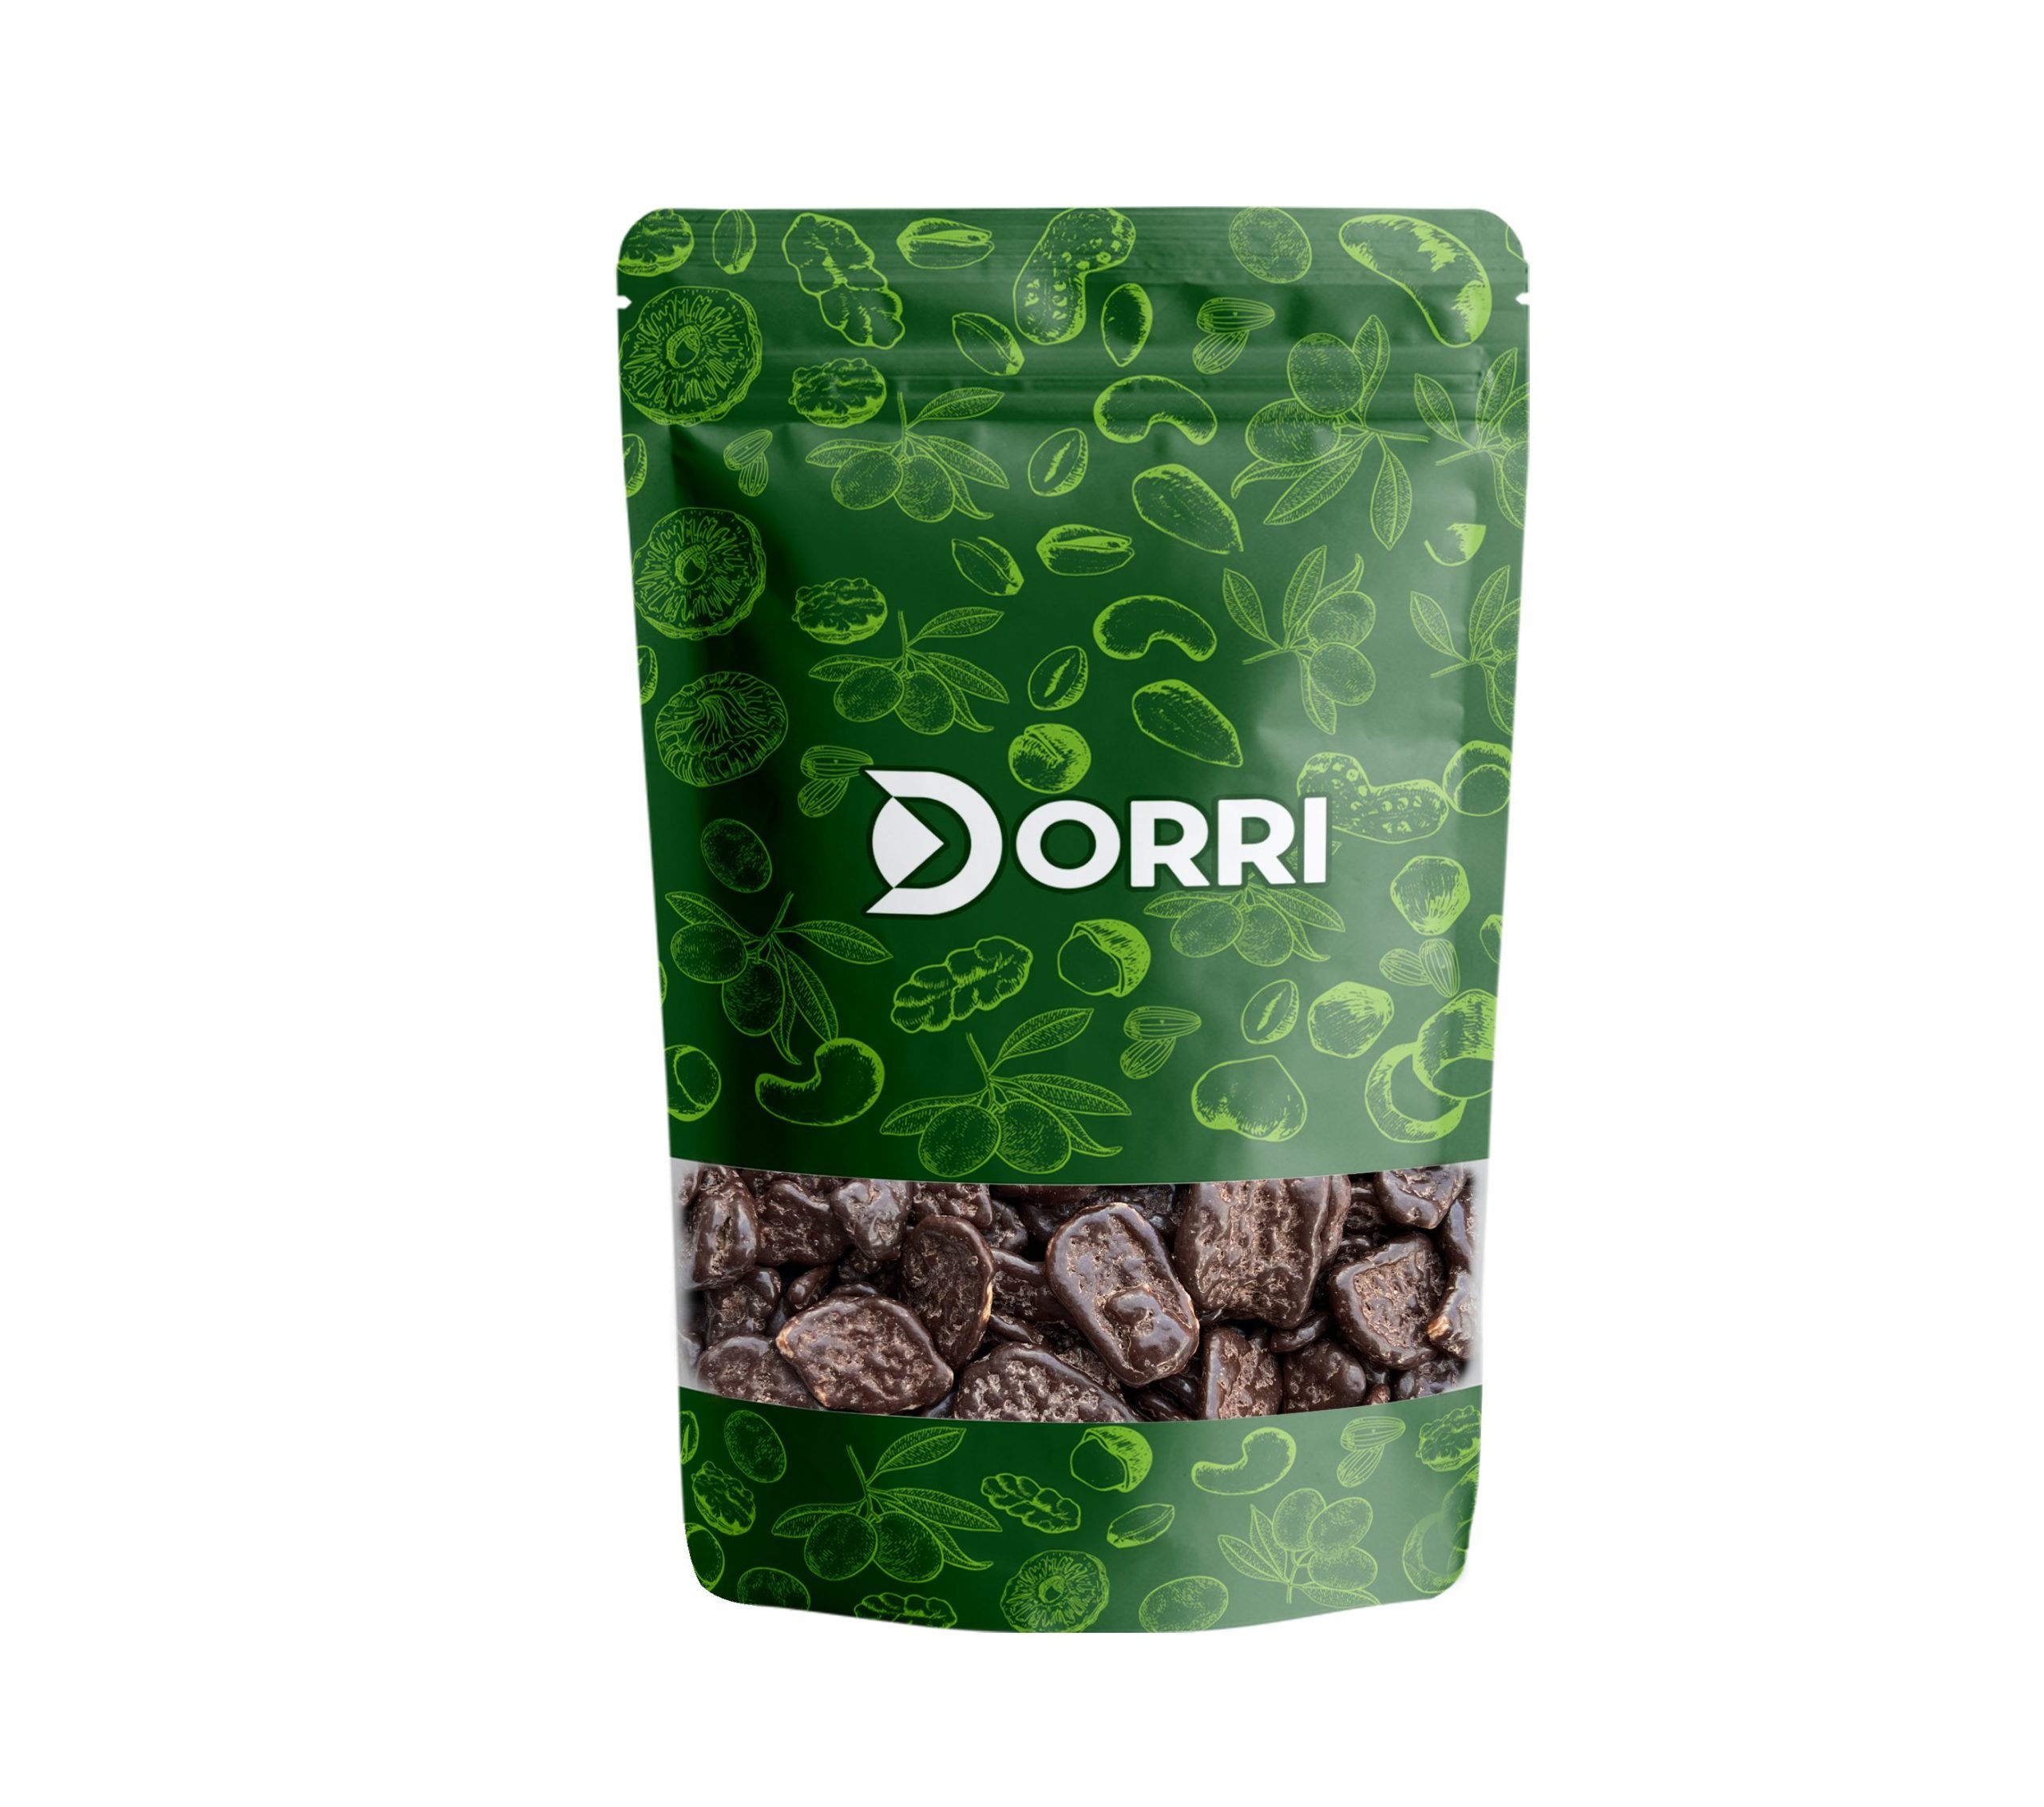 Dorri - Dark Chocolate Banana Chips